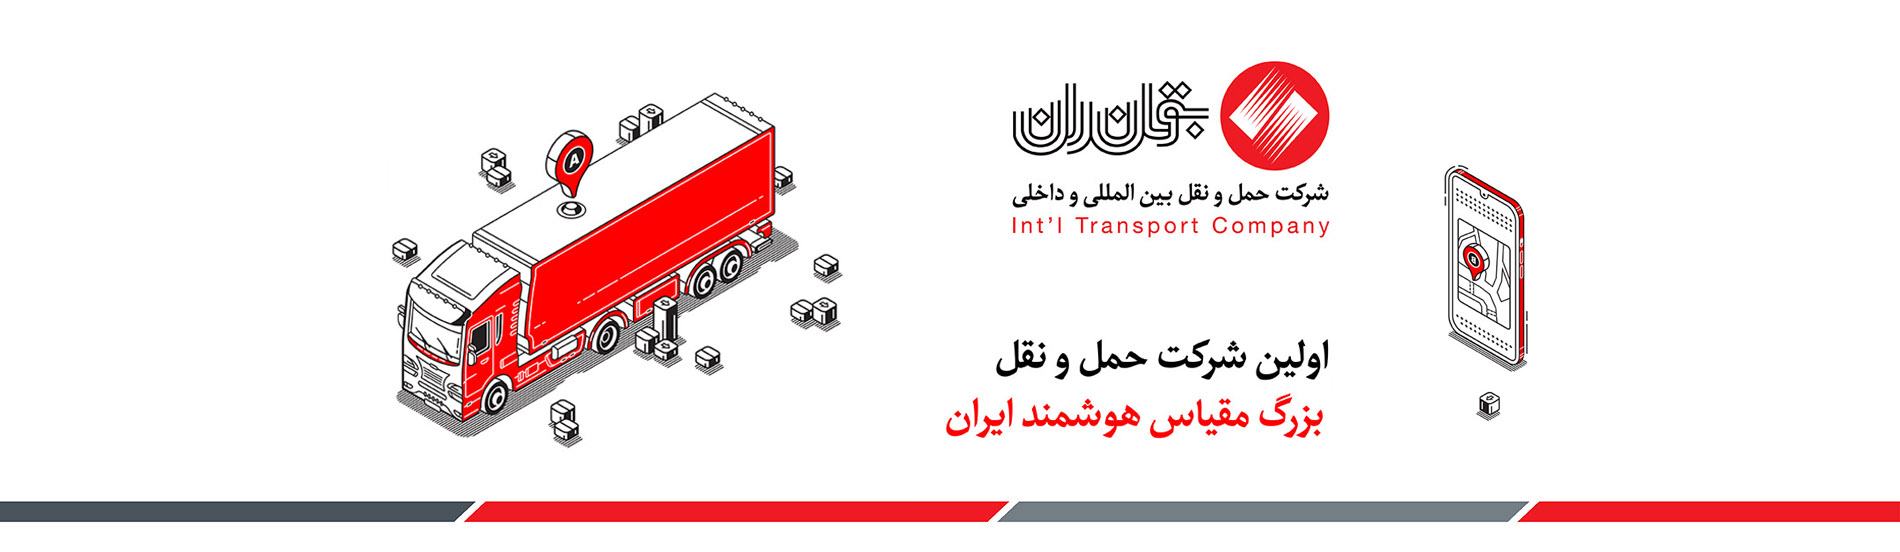 بوتان ران اولین شرکت حمل و نقل بزرگ مقیاس هوشمند ایران